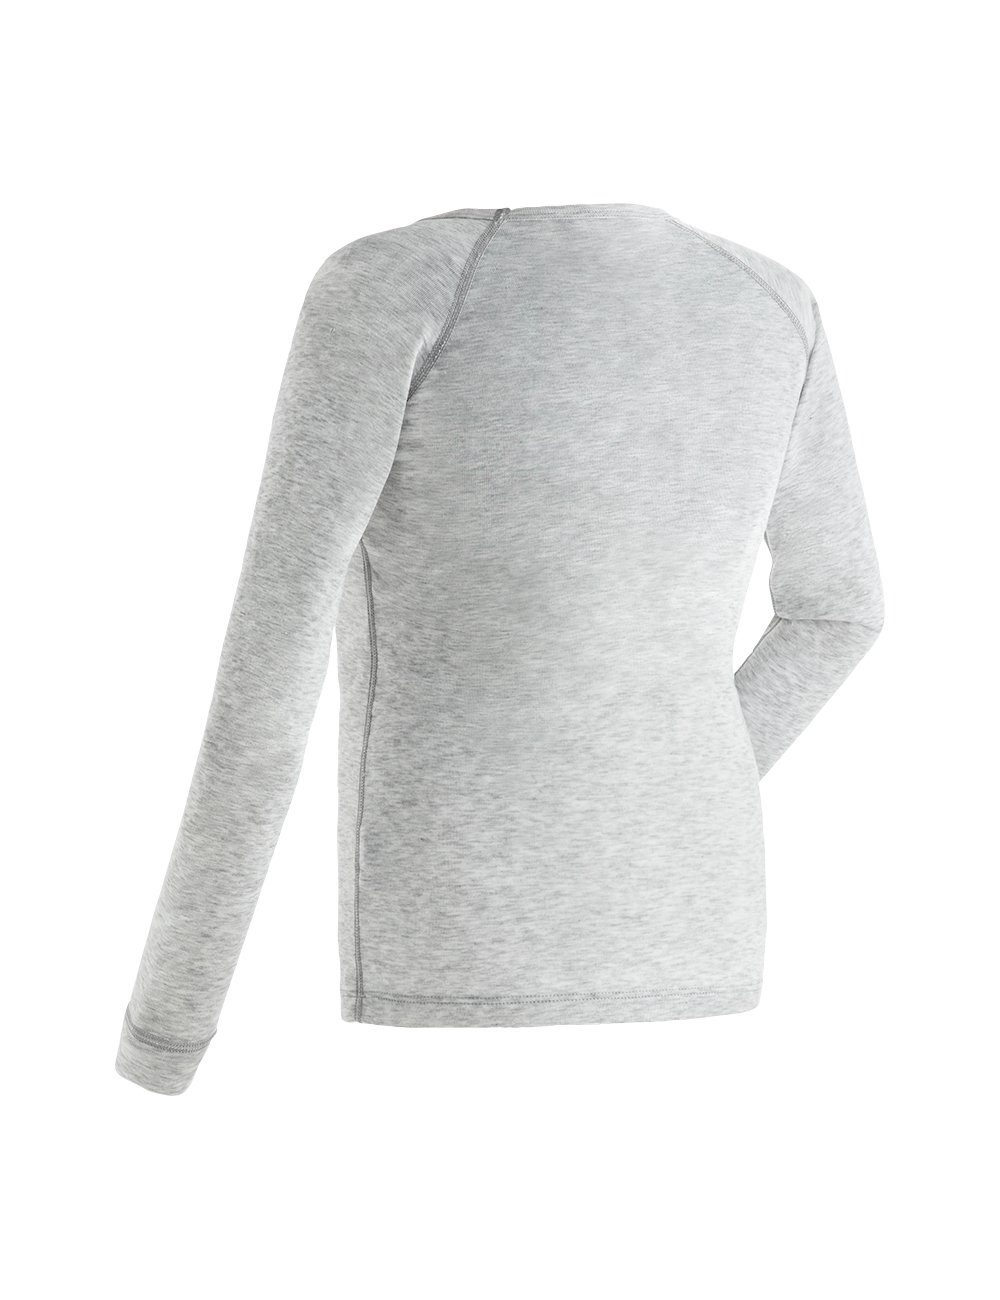 Maier Sports Kim & atmungsaktive Shirt Funktionswäsche Hose Schnelltrocknende, hellgrau